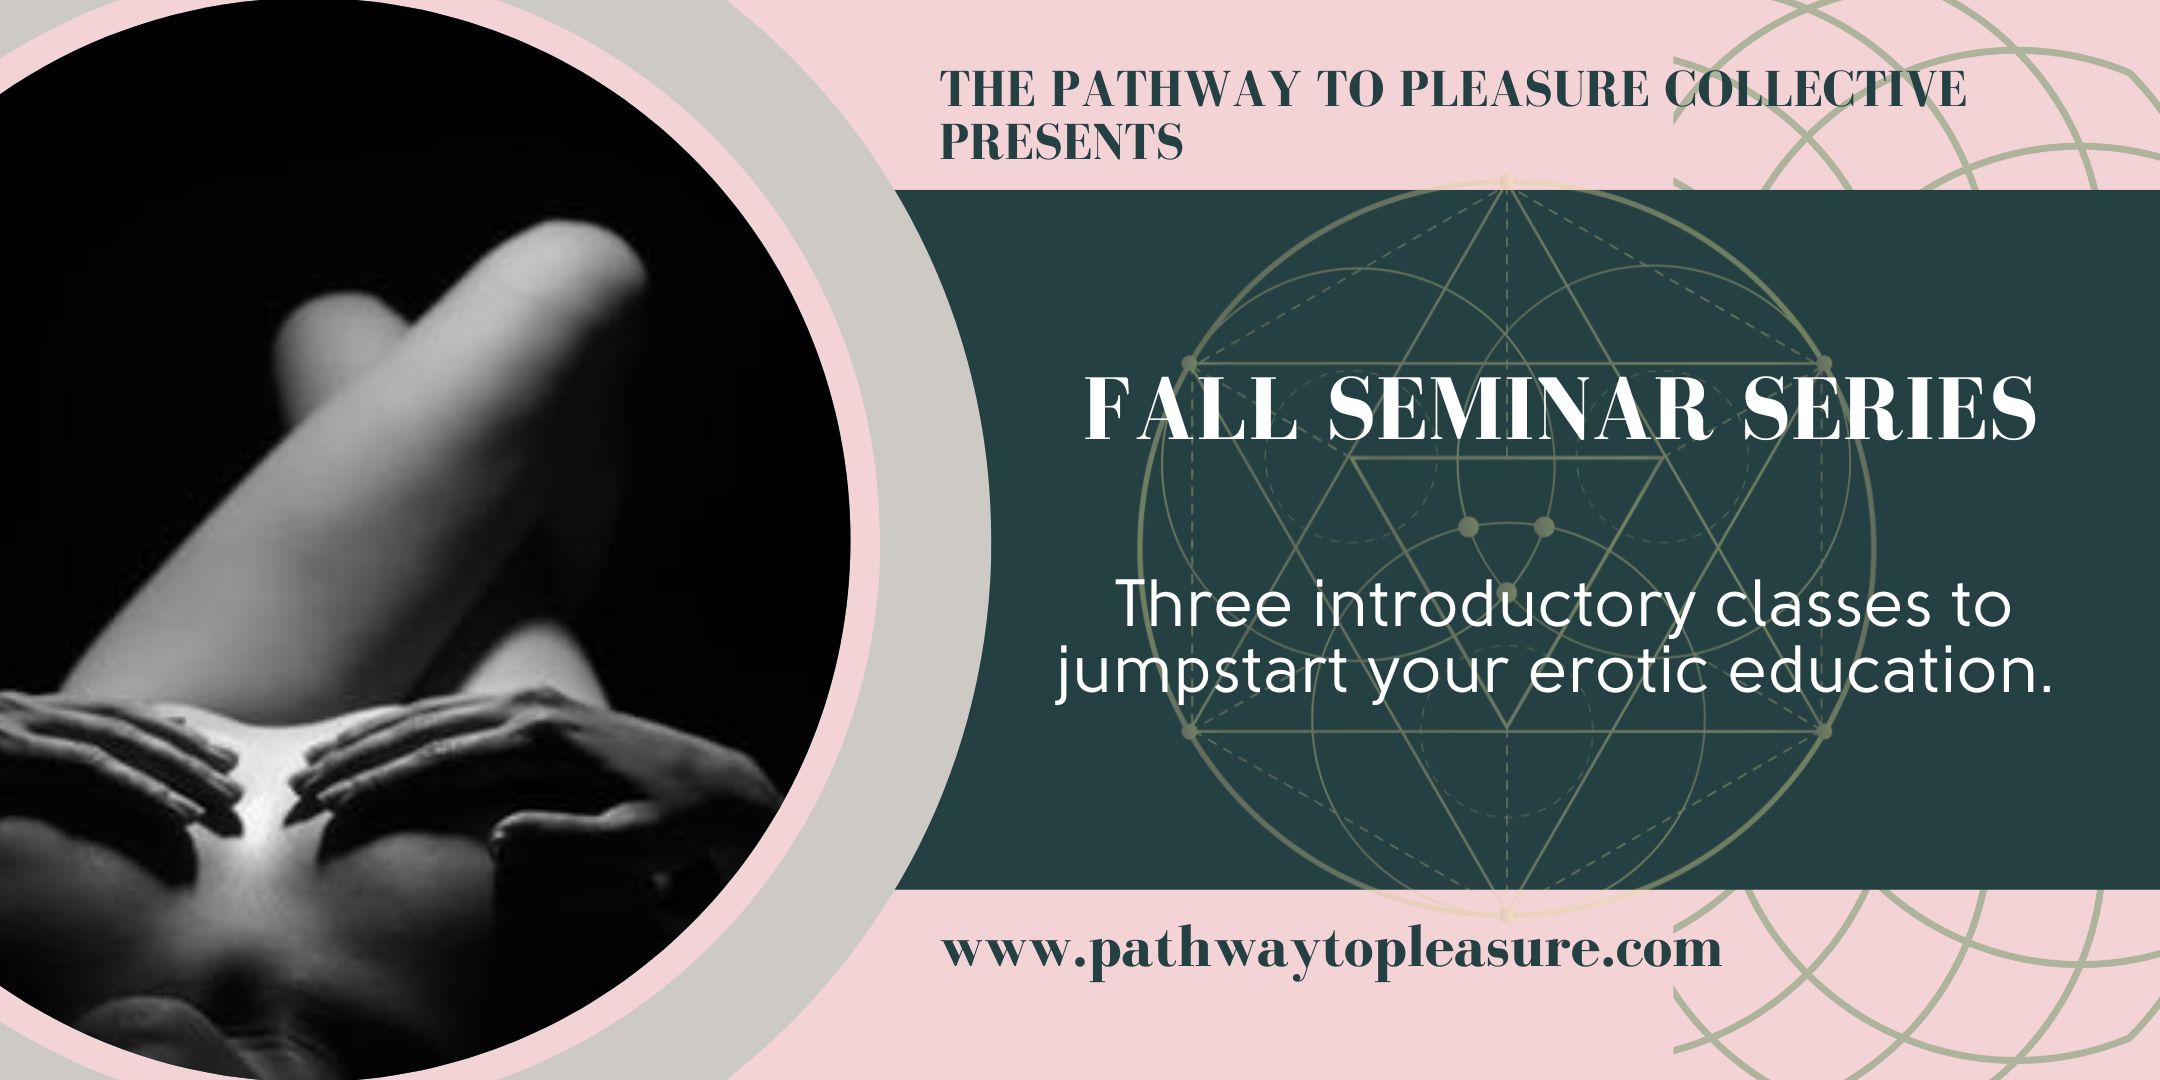 Fall Seminar Series